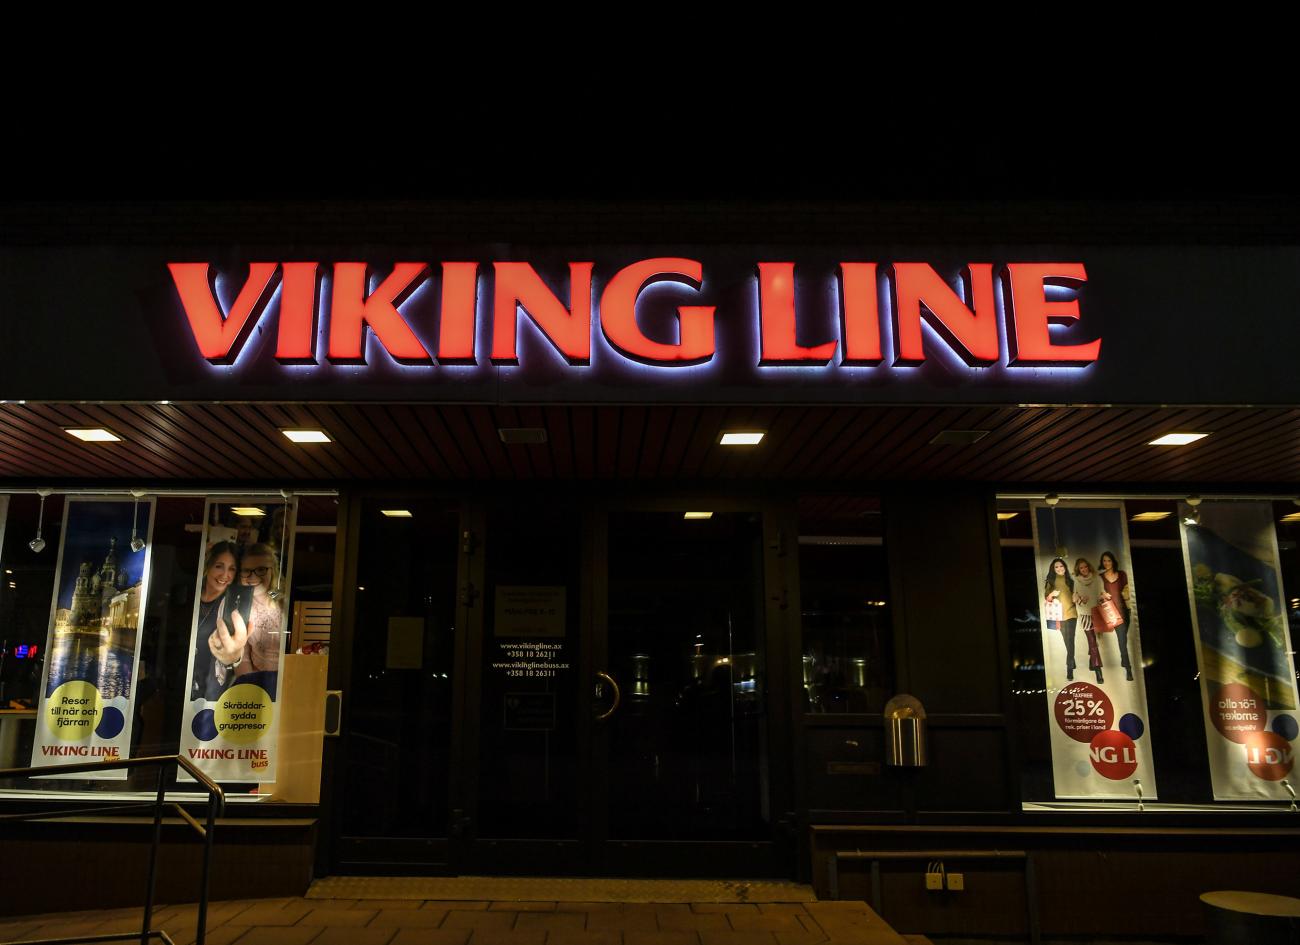 030321 , 03032021 , 20210303 , Viking Line kontoret på Storagatan  , revisorerna varnar för Viking lines extremt dåliga resultat pga corona pandemi , covid-19 